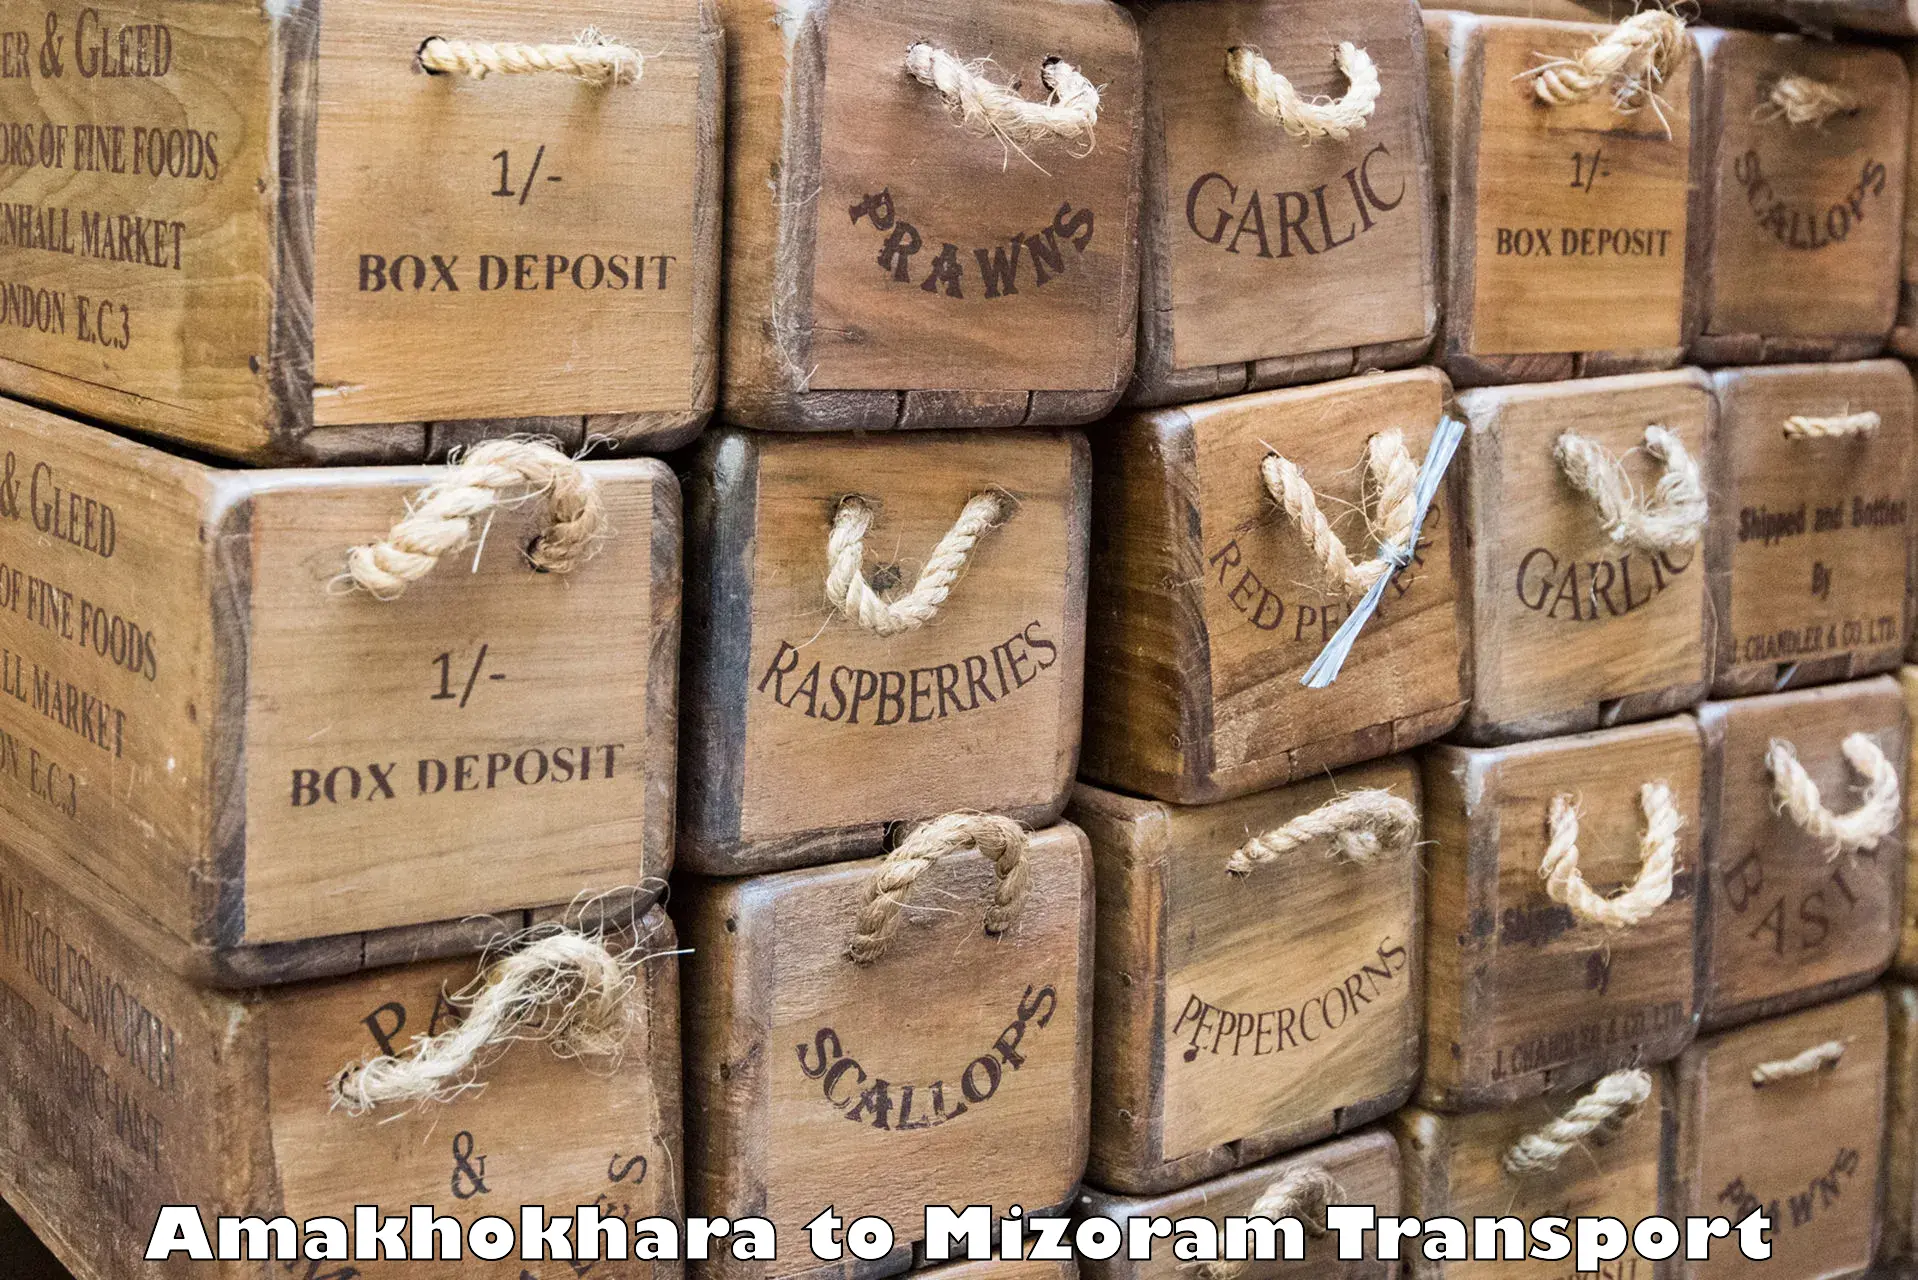 Cargo transport services Amakhokhara to Thenzawl